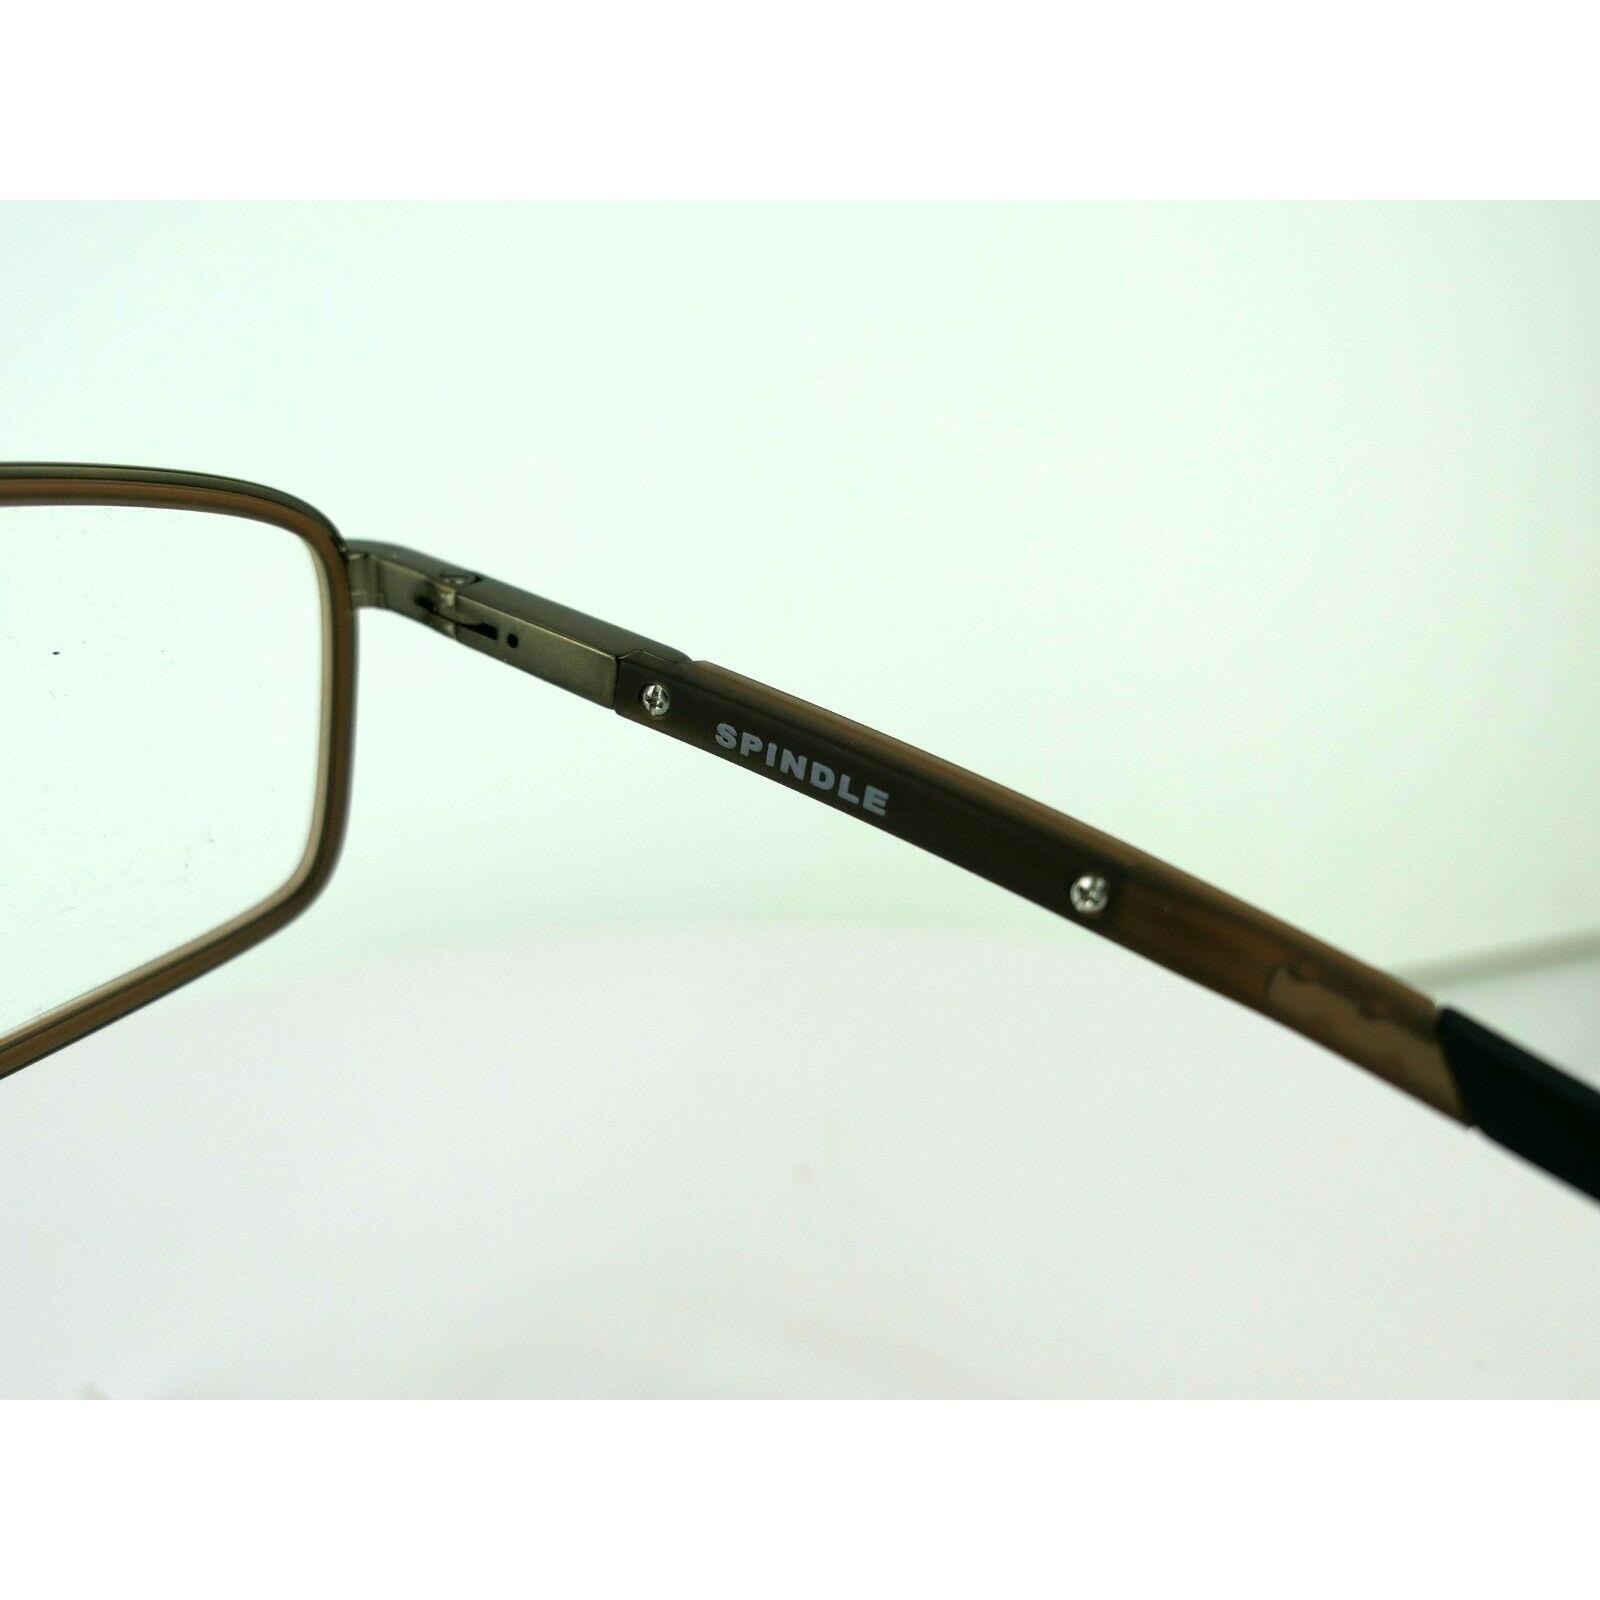 Oakley eyeglasses Spindle - Brown , Pewter/ Matt Dark Brown Frame 2